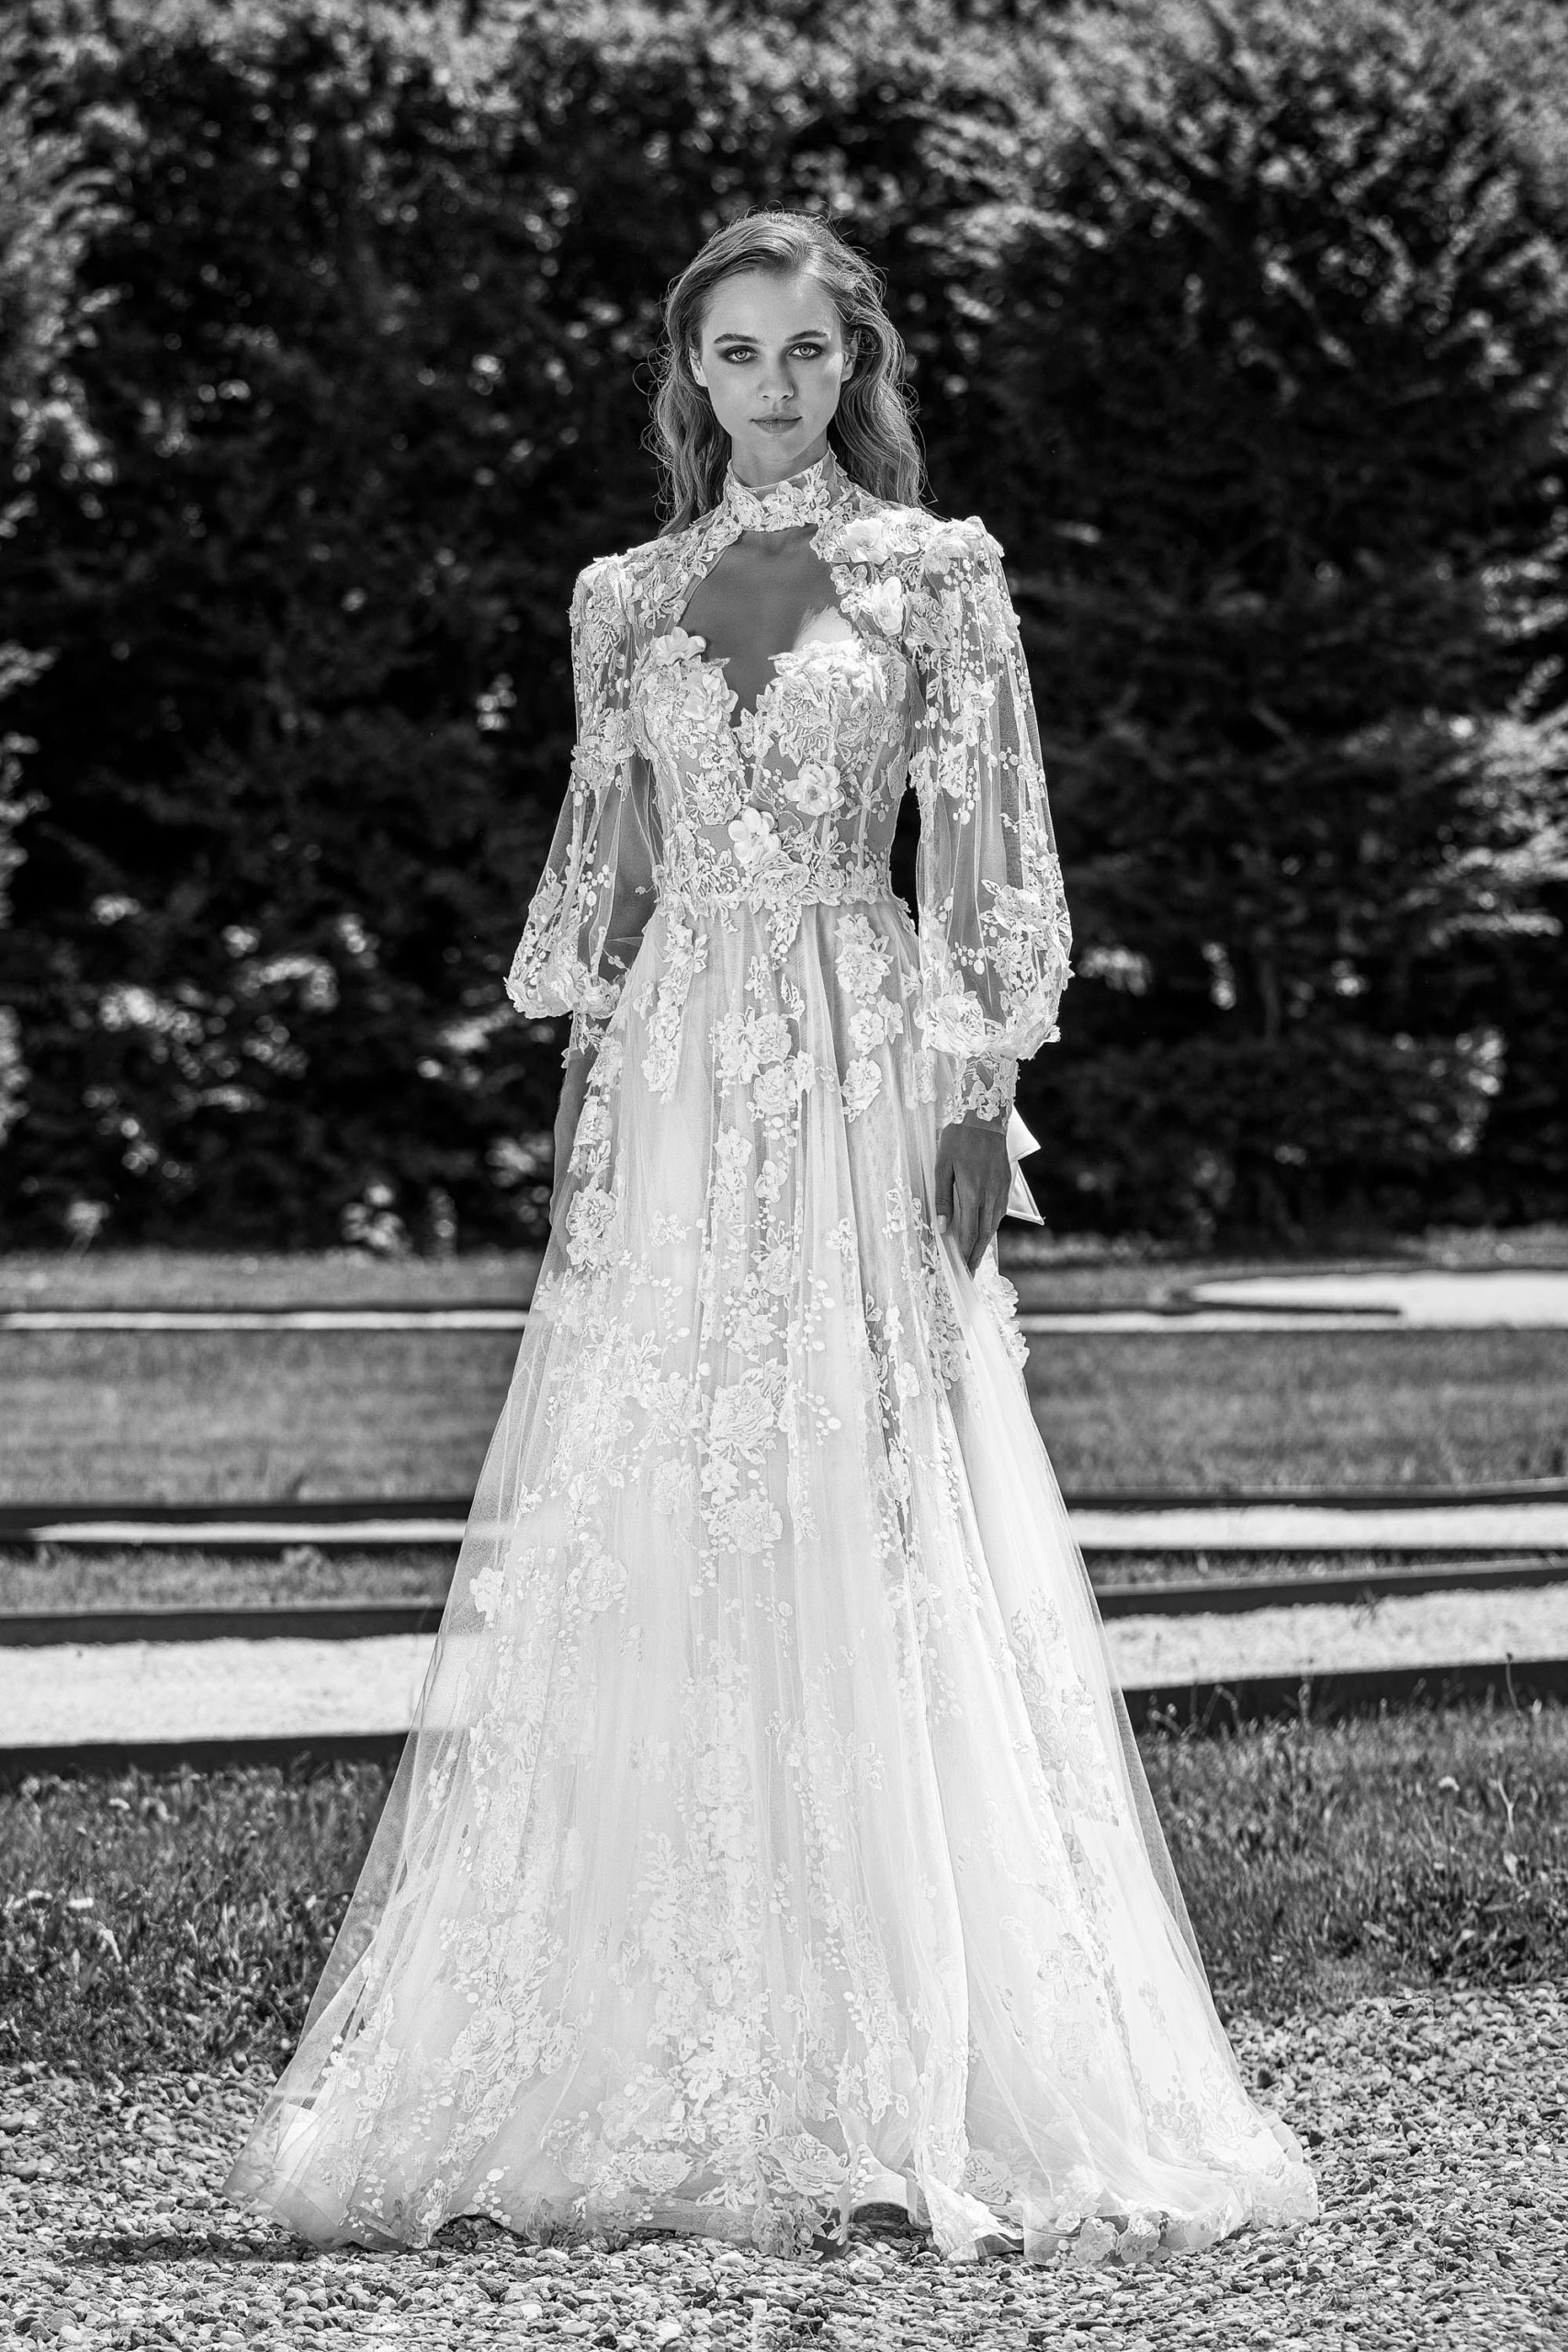 Atelier Abiti Sposa Reggio Calabria: L'Avant-Garde Vogue Style per Una Sposa da Sogno - Scopri la Haute Couture per il Tuo Matrimonio